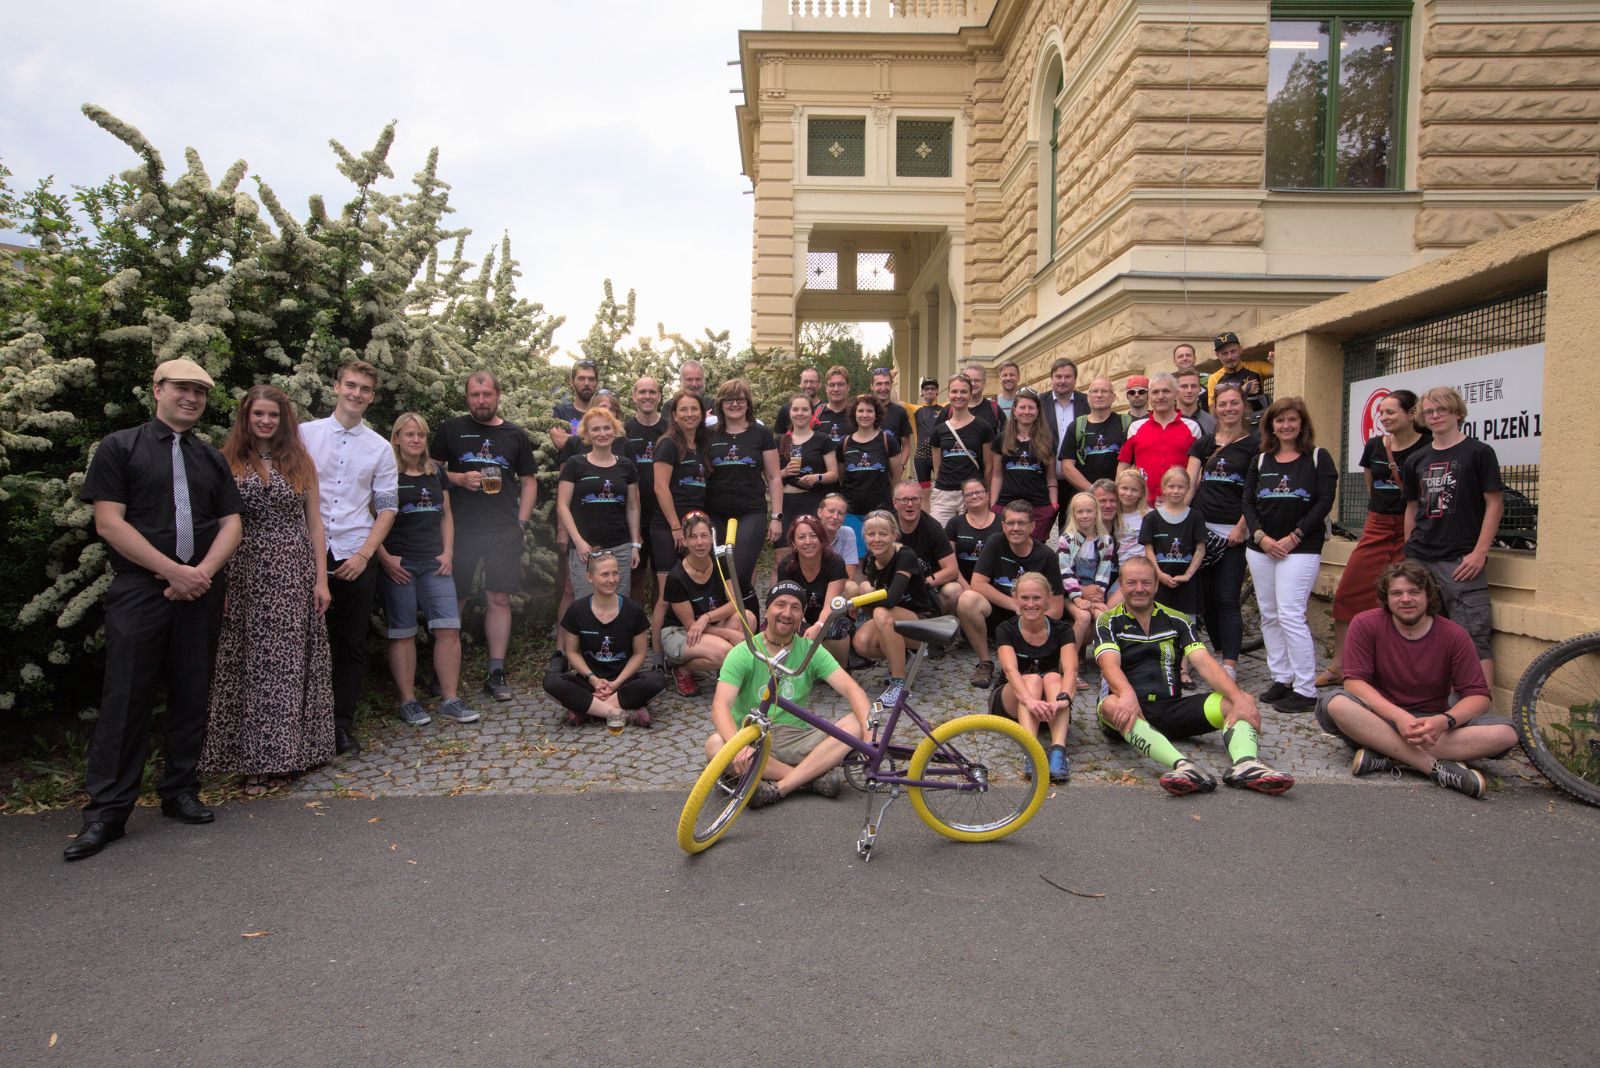 Výzva Do práce na kole letos přilákala v Plzni přes 1200 lidí k aktivní dopravě